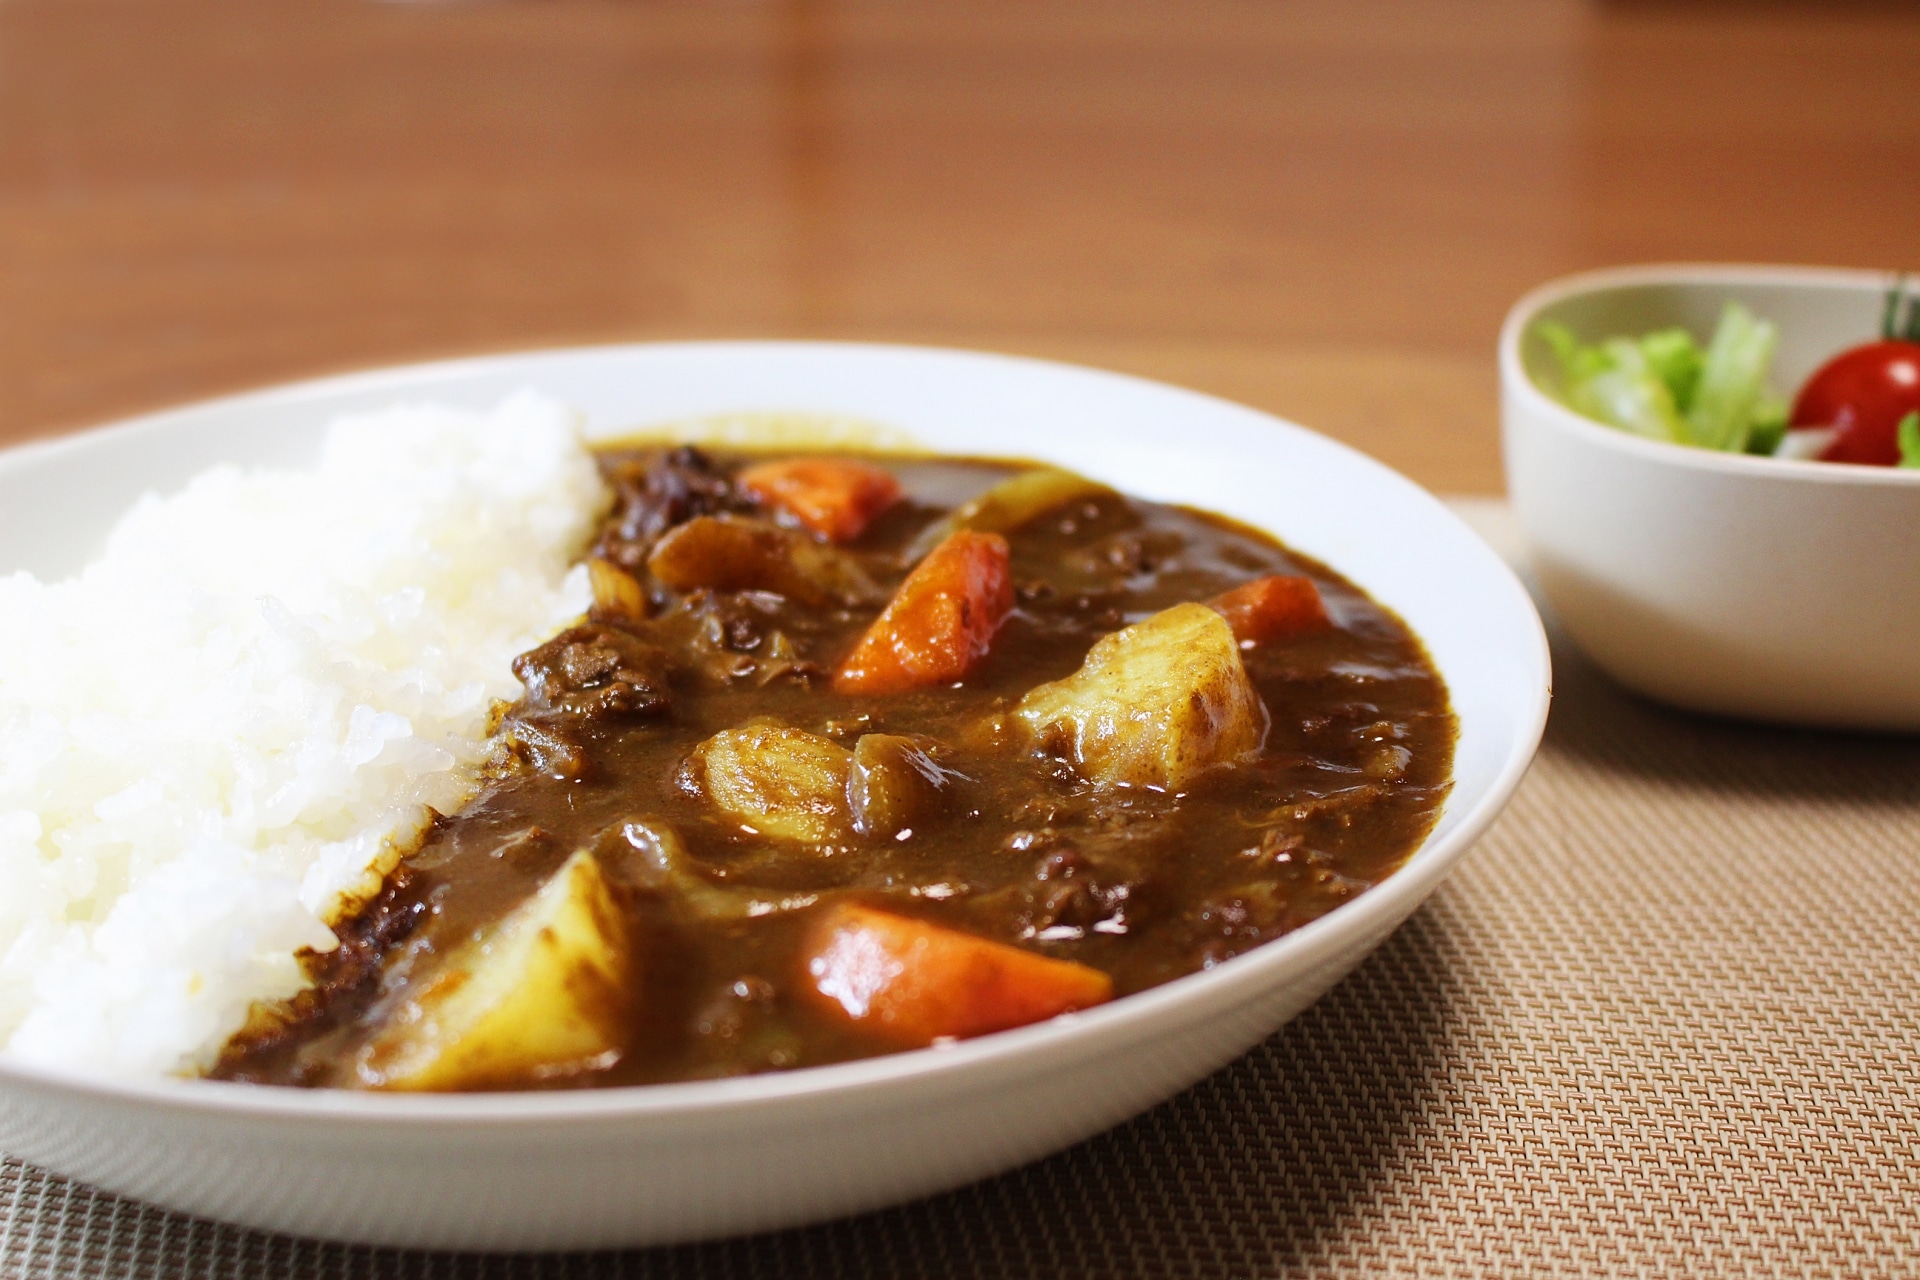 วิธีทำแกงกะหรี่ญี่ปุ่น ง่ายๆ พร้อมสูตรและเคล็ดลับที่ทำให้อร่อย!